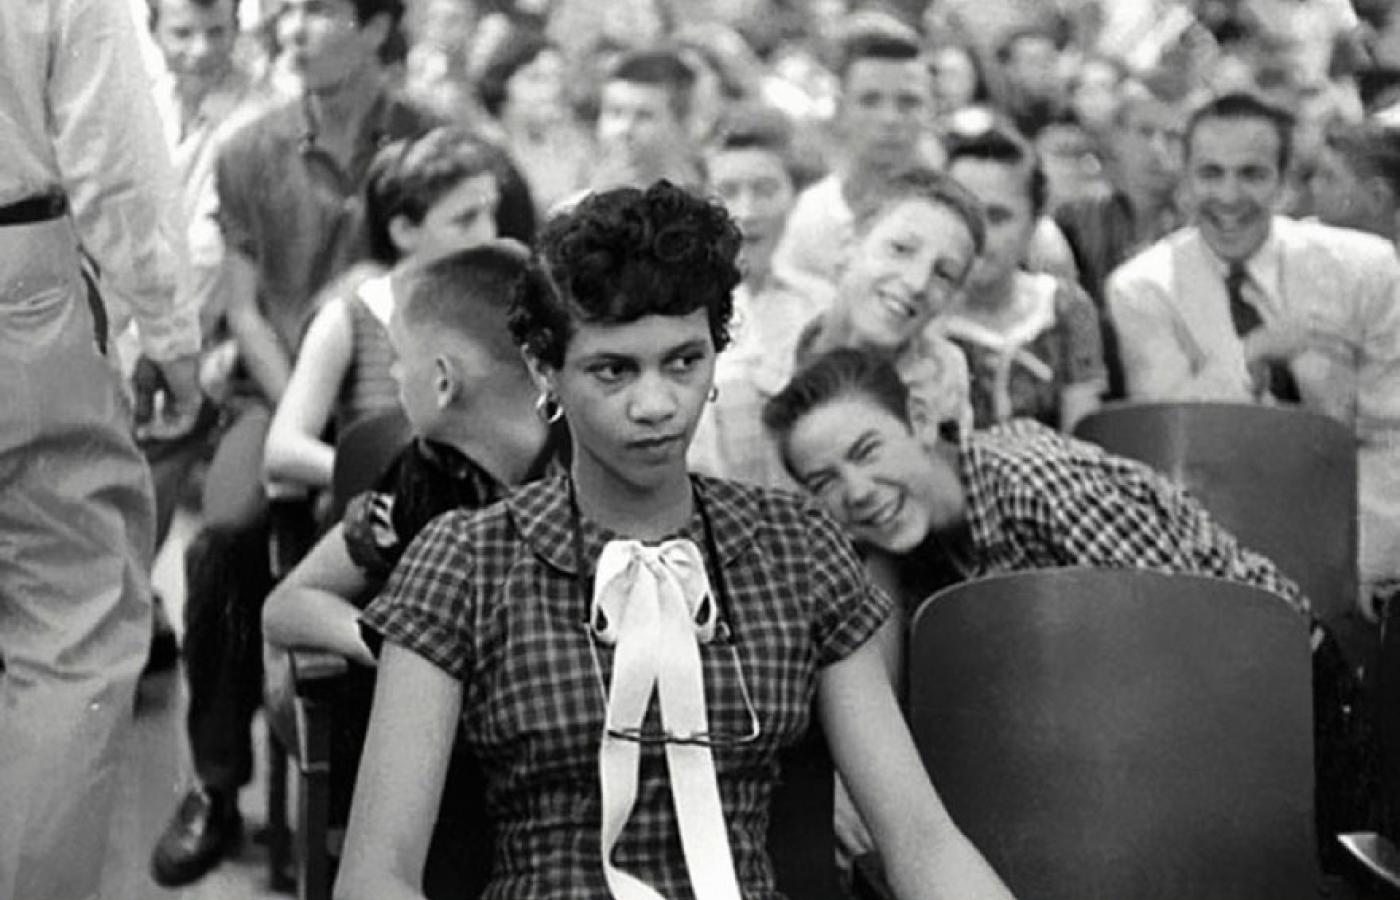 Dorothy Counts, pierwsza czarnoskóra dziewczyna, która otrzymała wstęp do szkoły zarezerwowanej wcześniej tylko dla białych. 1957 rok.